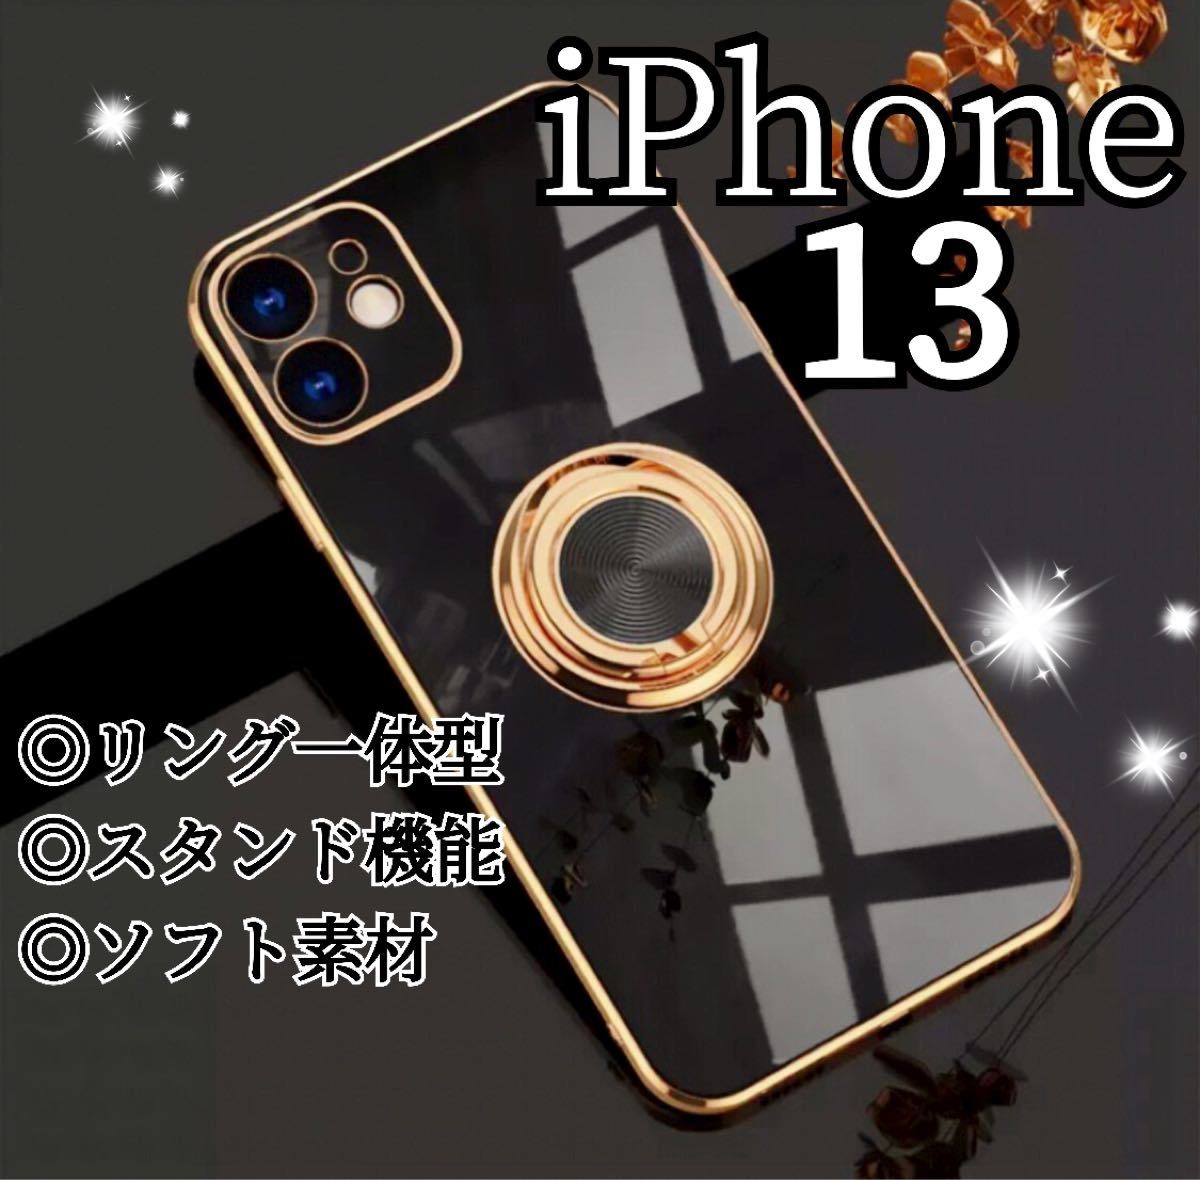 リング付き iPhone ケース iPhone13 ブラック 高級感 韓国 スマホリング スマホカバー ソフトケース 黒 スタンド